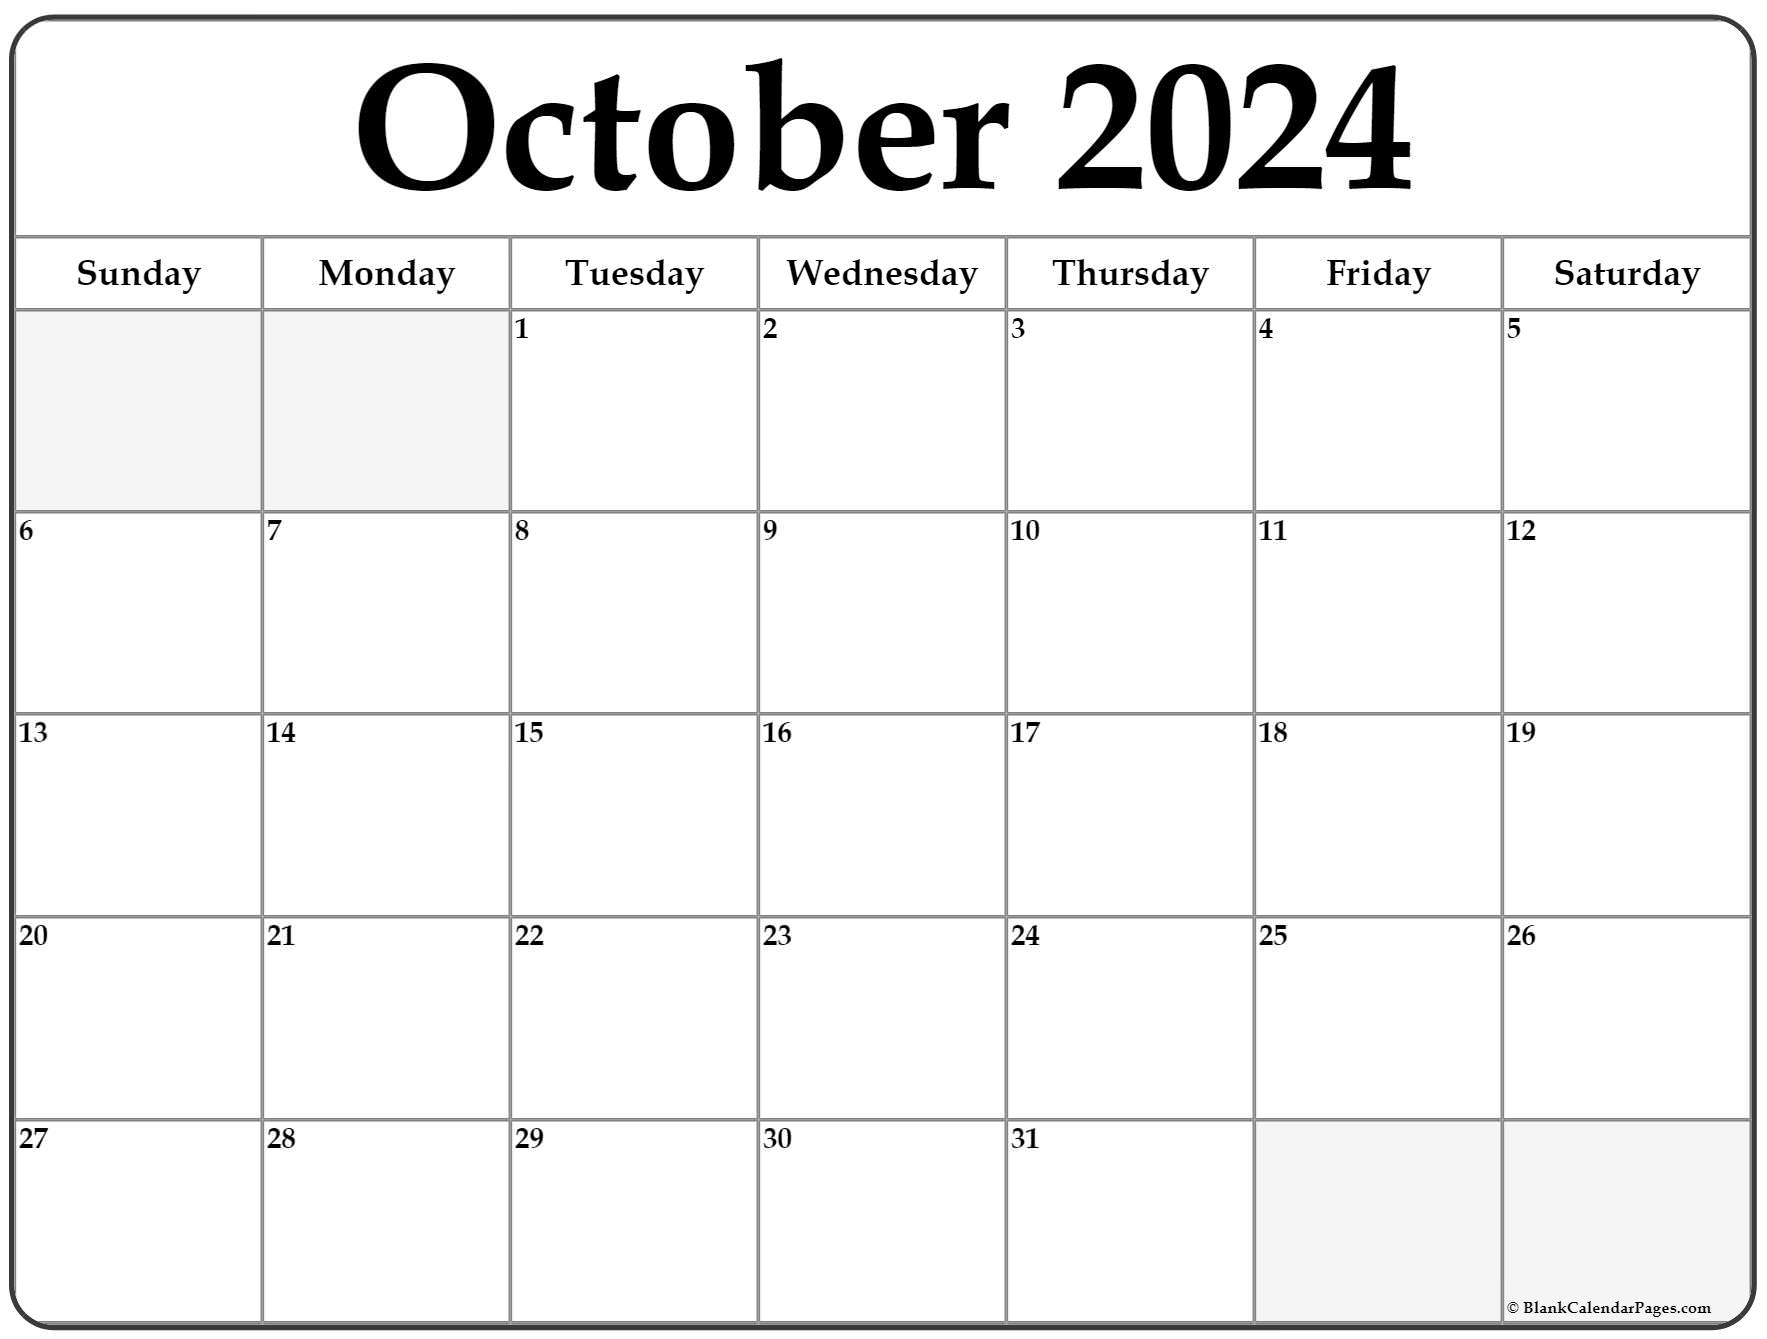 October 2022 Blank Calendar October 2022 Calendar | Free Printable Calendar Templates